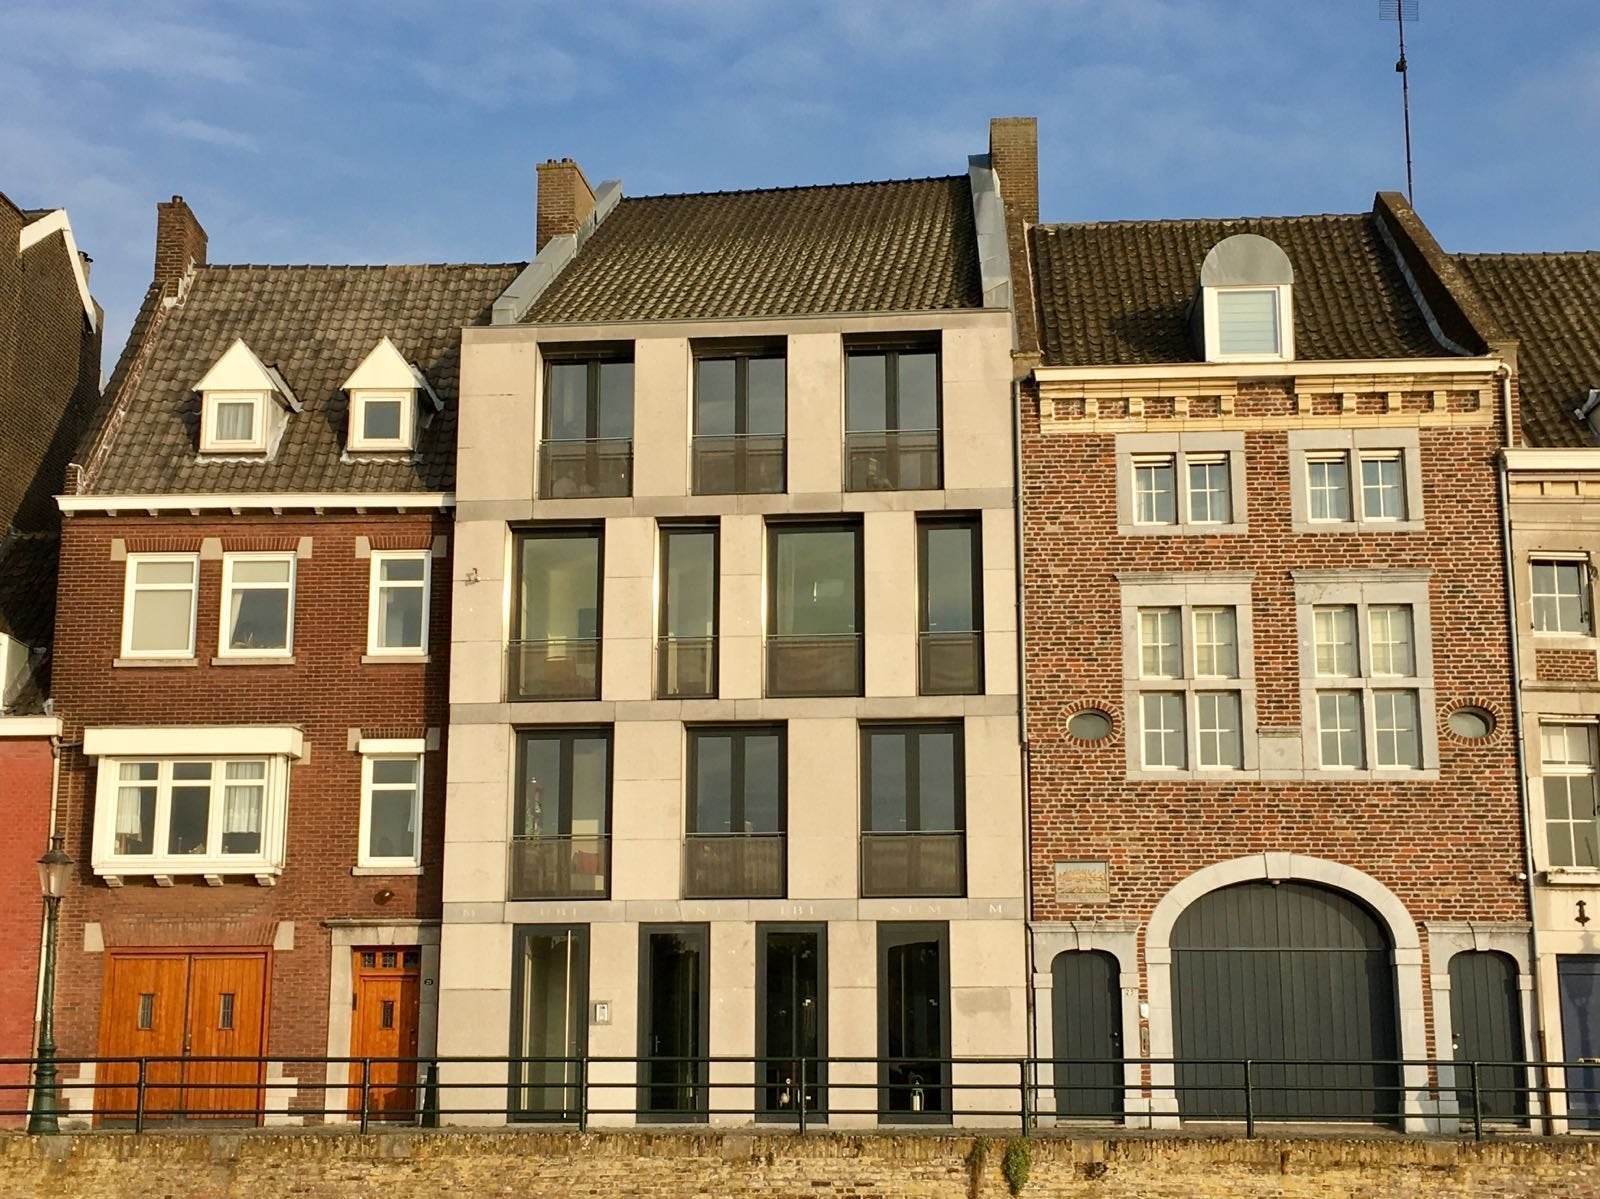 Bekijk foto 1/20 van house in Maastricht